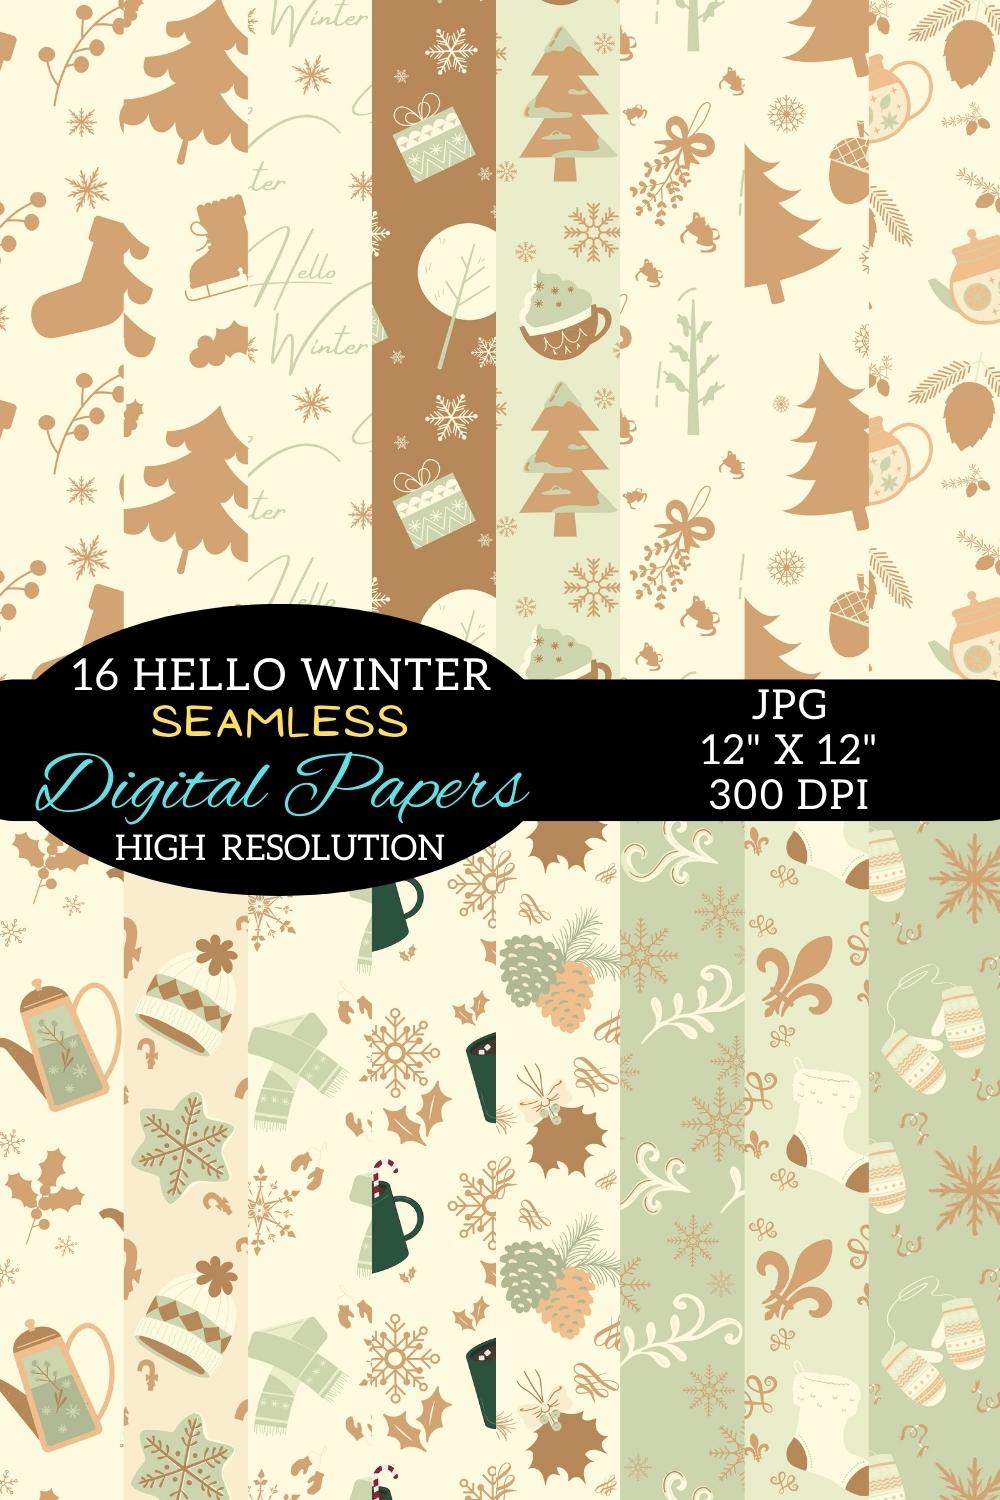 Boho Digital Paper Winter Patterns Design pinterest image.